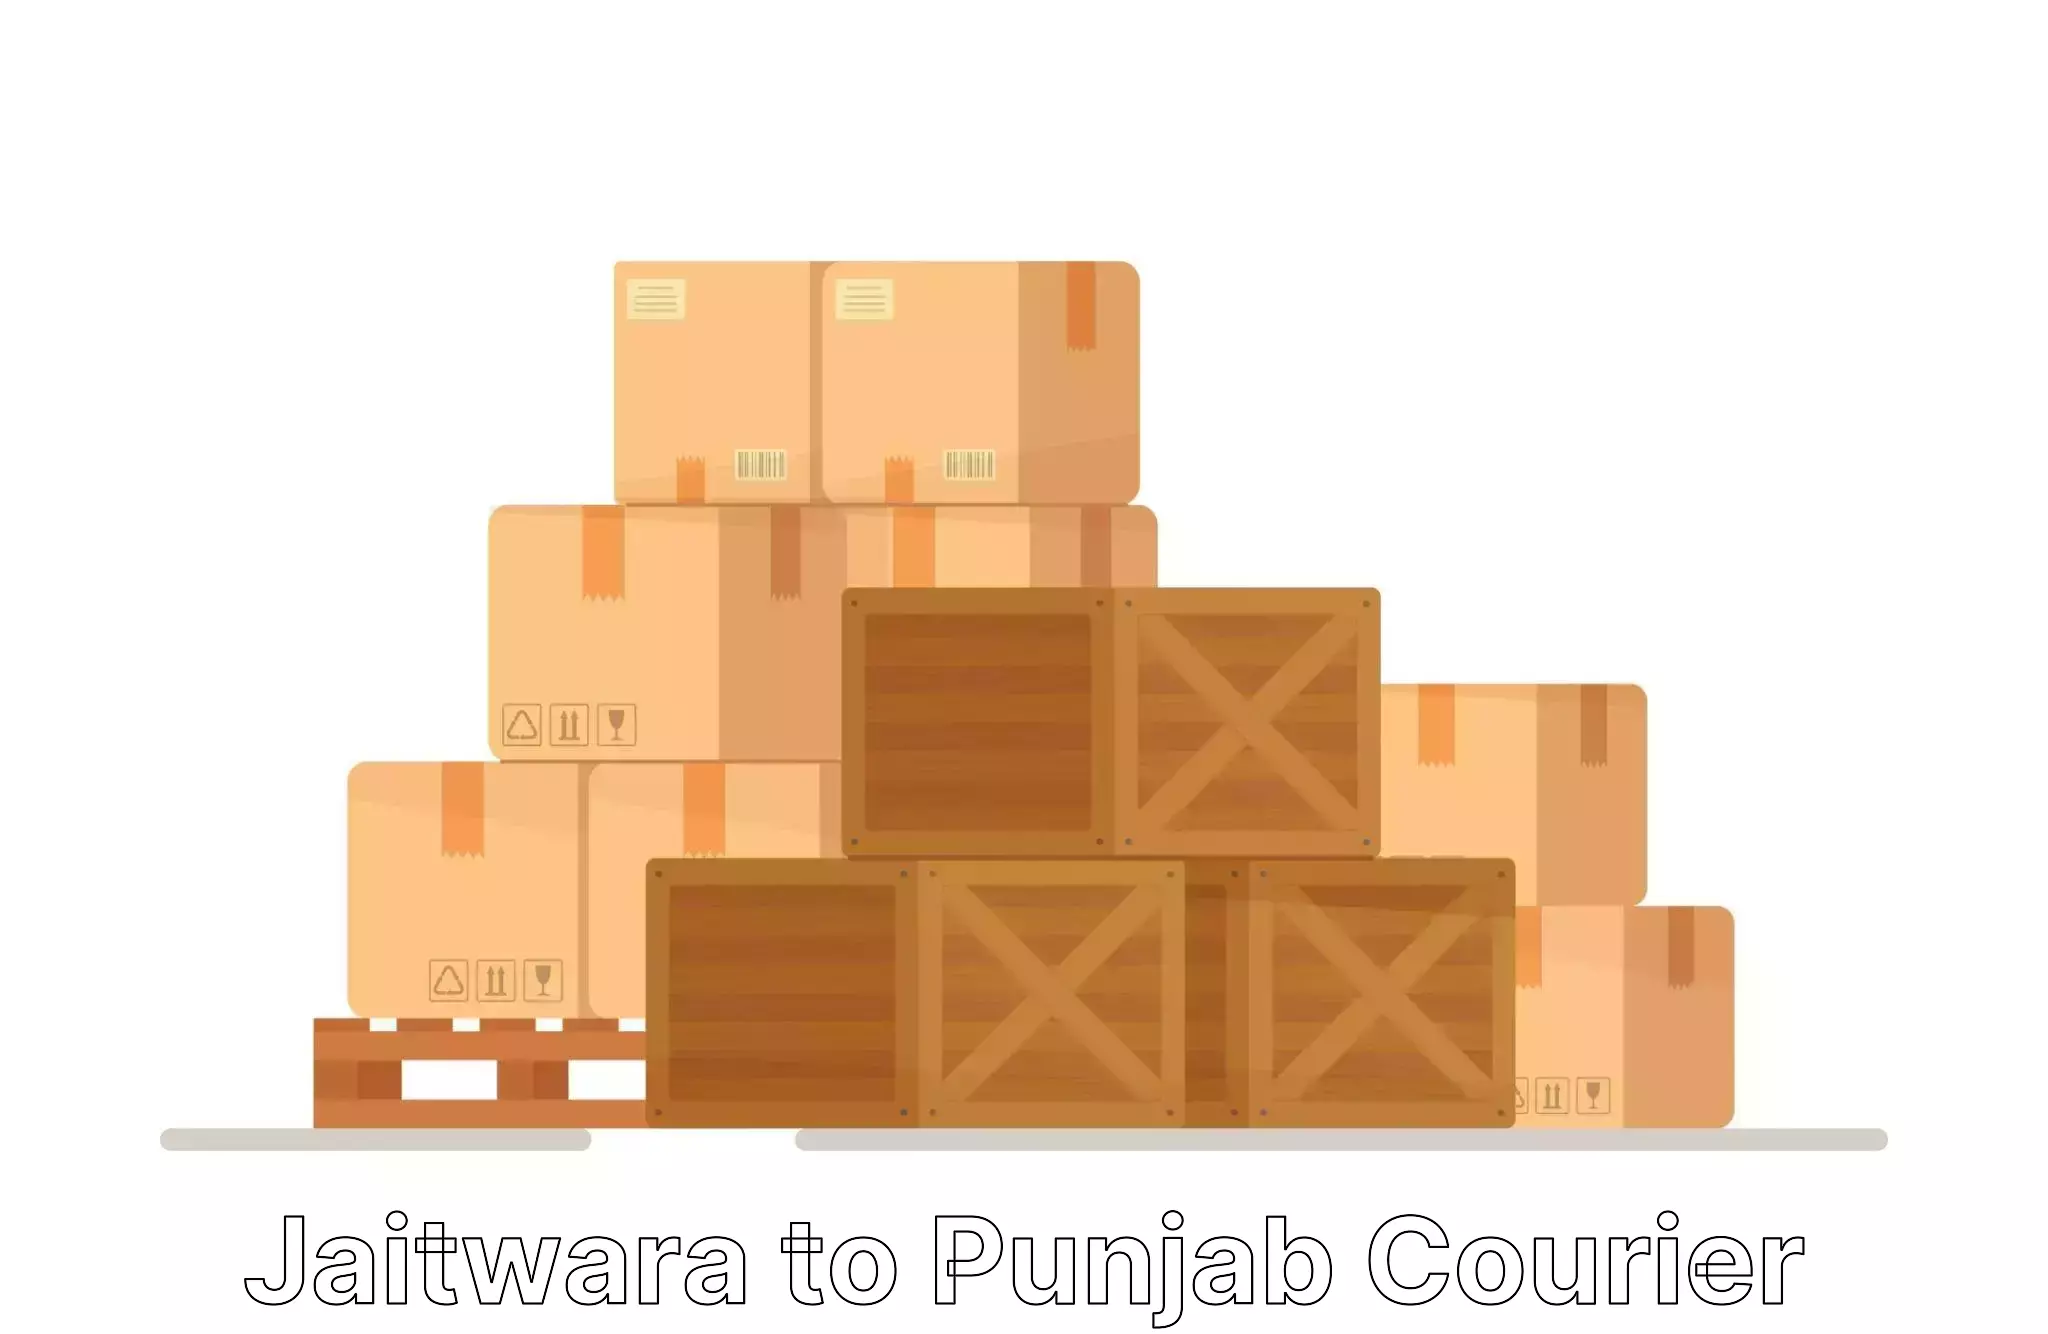 Quality household transport in Jaitwara to Punjab